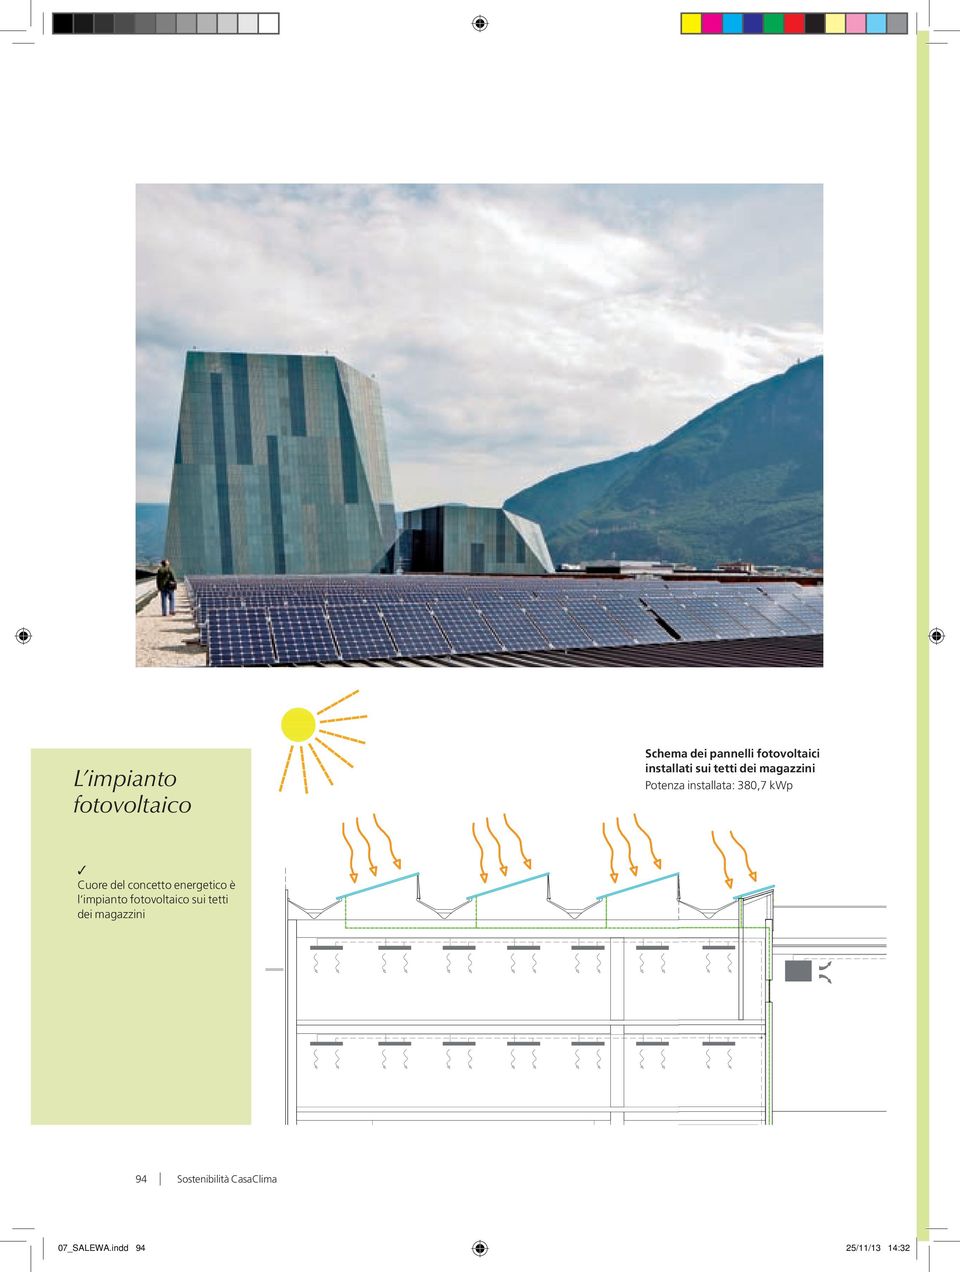 Cuore del concetto energetico è l impianto fotovoltaico sui tetti